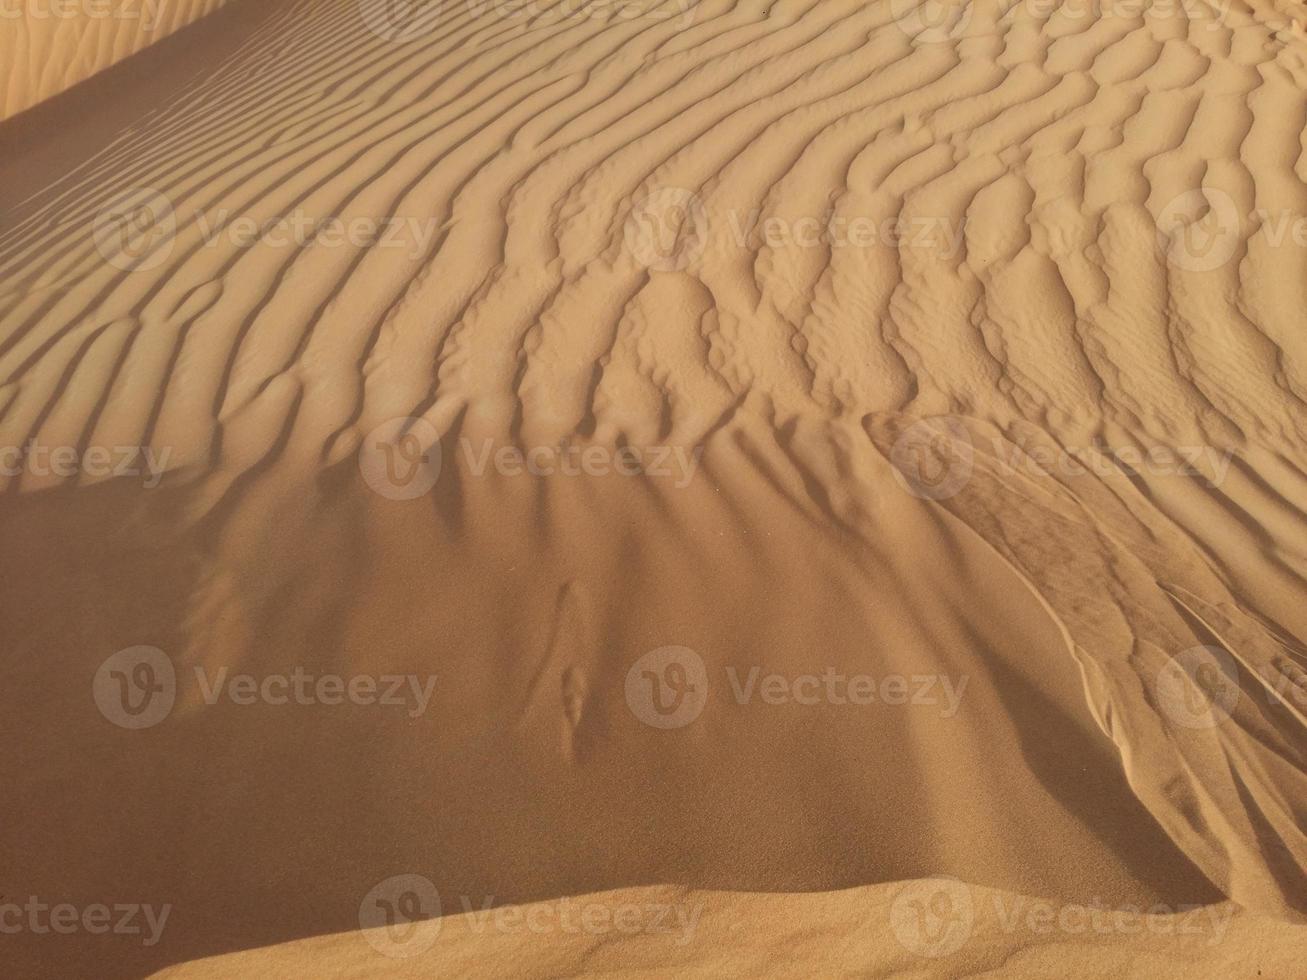 zandduinen in de woestijn foto